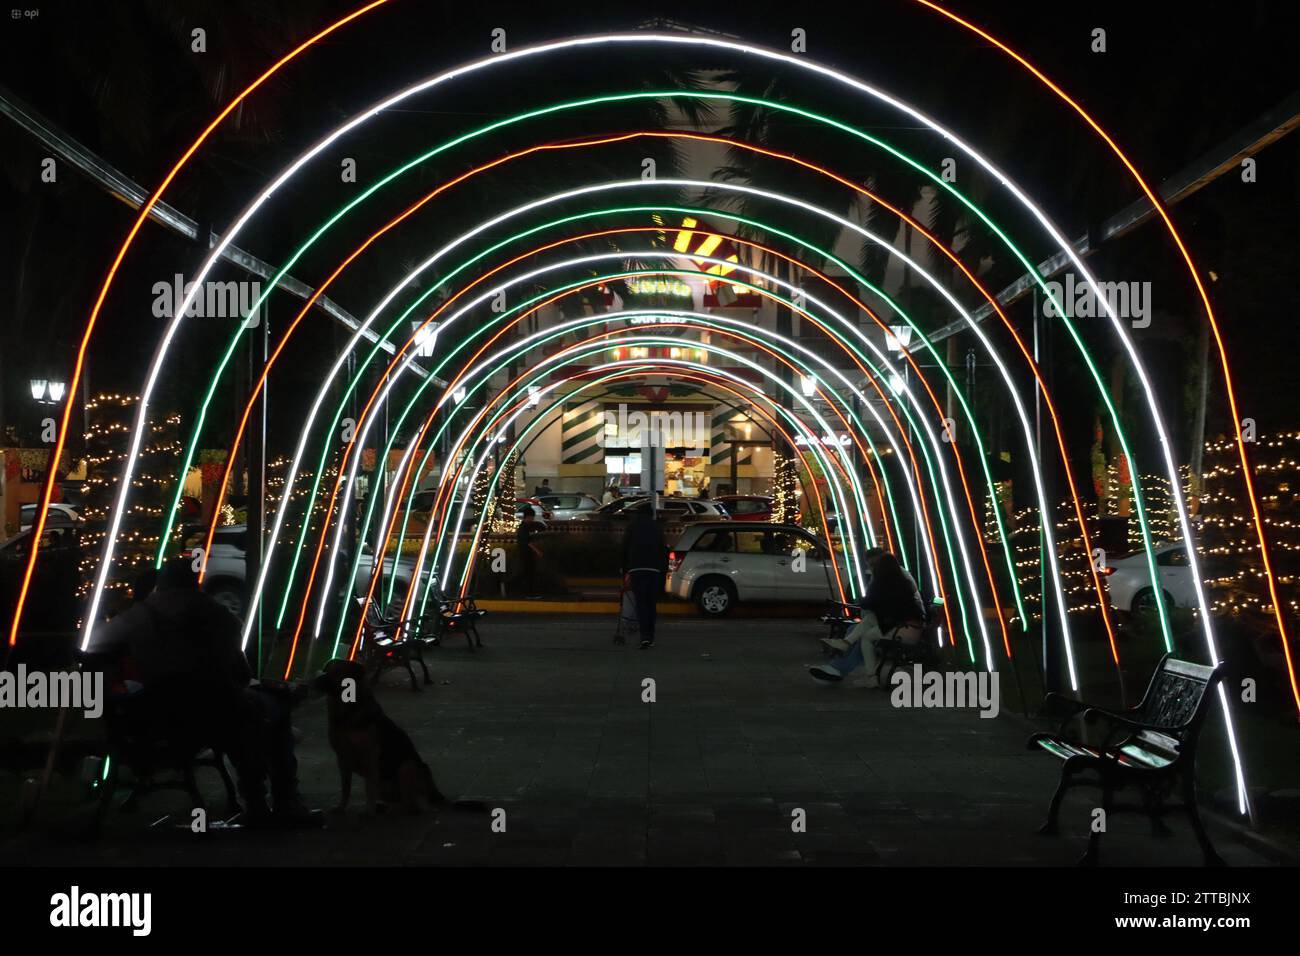 VENTA-ADORNOS-NAVIDENOS-ILUMINADOS Quito, miÃ rcoles 20 de diciembre del 2023 Faltando pocos dias y pese a la crÃsis energÃ tica, pequenos comerciantes y centros comerciales, venden gran cantidad de luces, adornos navidenos iluminados, como: Girnaldas,estrellas, Renos, arboles de navidad, etc., en Quito. Fotos:Rolando Enriquez/API Quito Pichincha Ecuador SOI-VENTA-ADORNOS-NAVIDENOS-ILUMINADOS-4fe4ec415399bd7d81f537c159fd9460 *** VERKAUF VON BELEUCHTETEN WEIHNACHTSDEKORATIONEN Quito, Mittwoch, 20. Dezember 2023 mit wenigen Tagen und trotz der Energiekrise, kleine Händler und Einkaufszentren, verkaufen Stockfoto